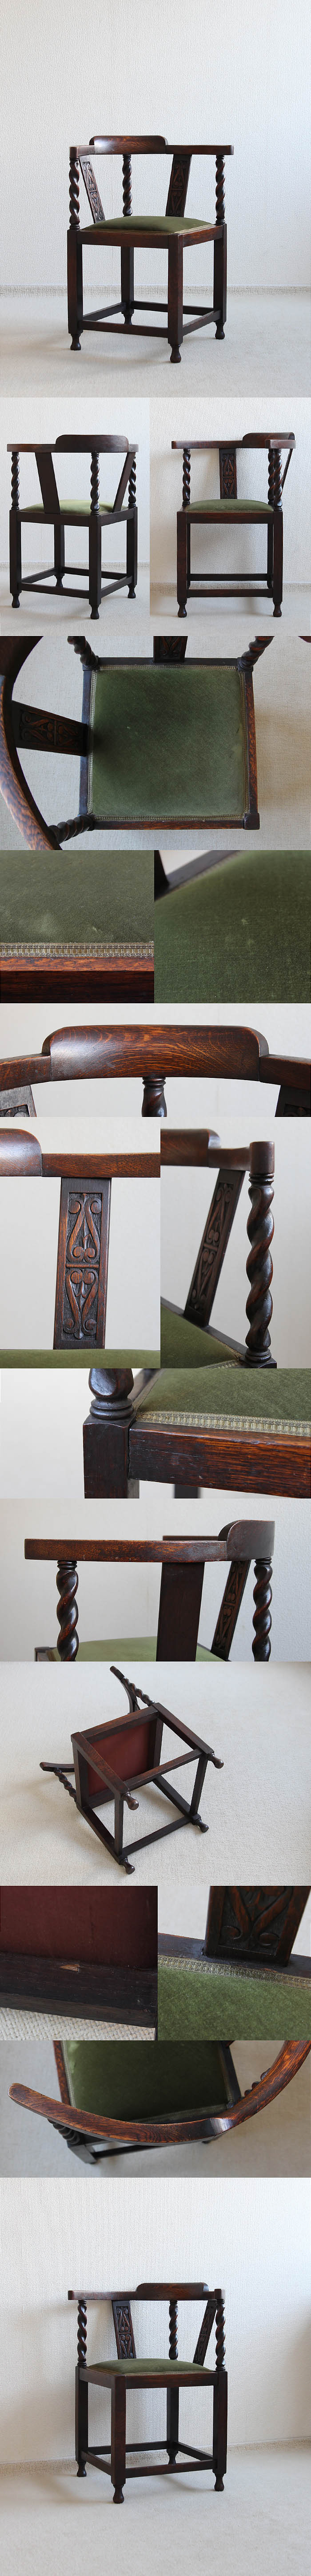 イギリス アンティーク コーナーチェア オーク材 木製椅子 ツイストレッグ 家具「サロンチェア」P-075